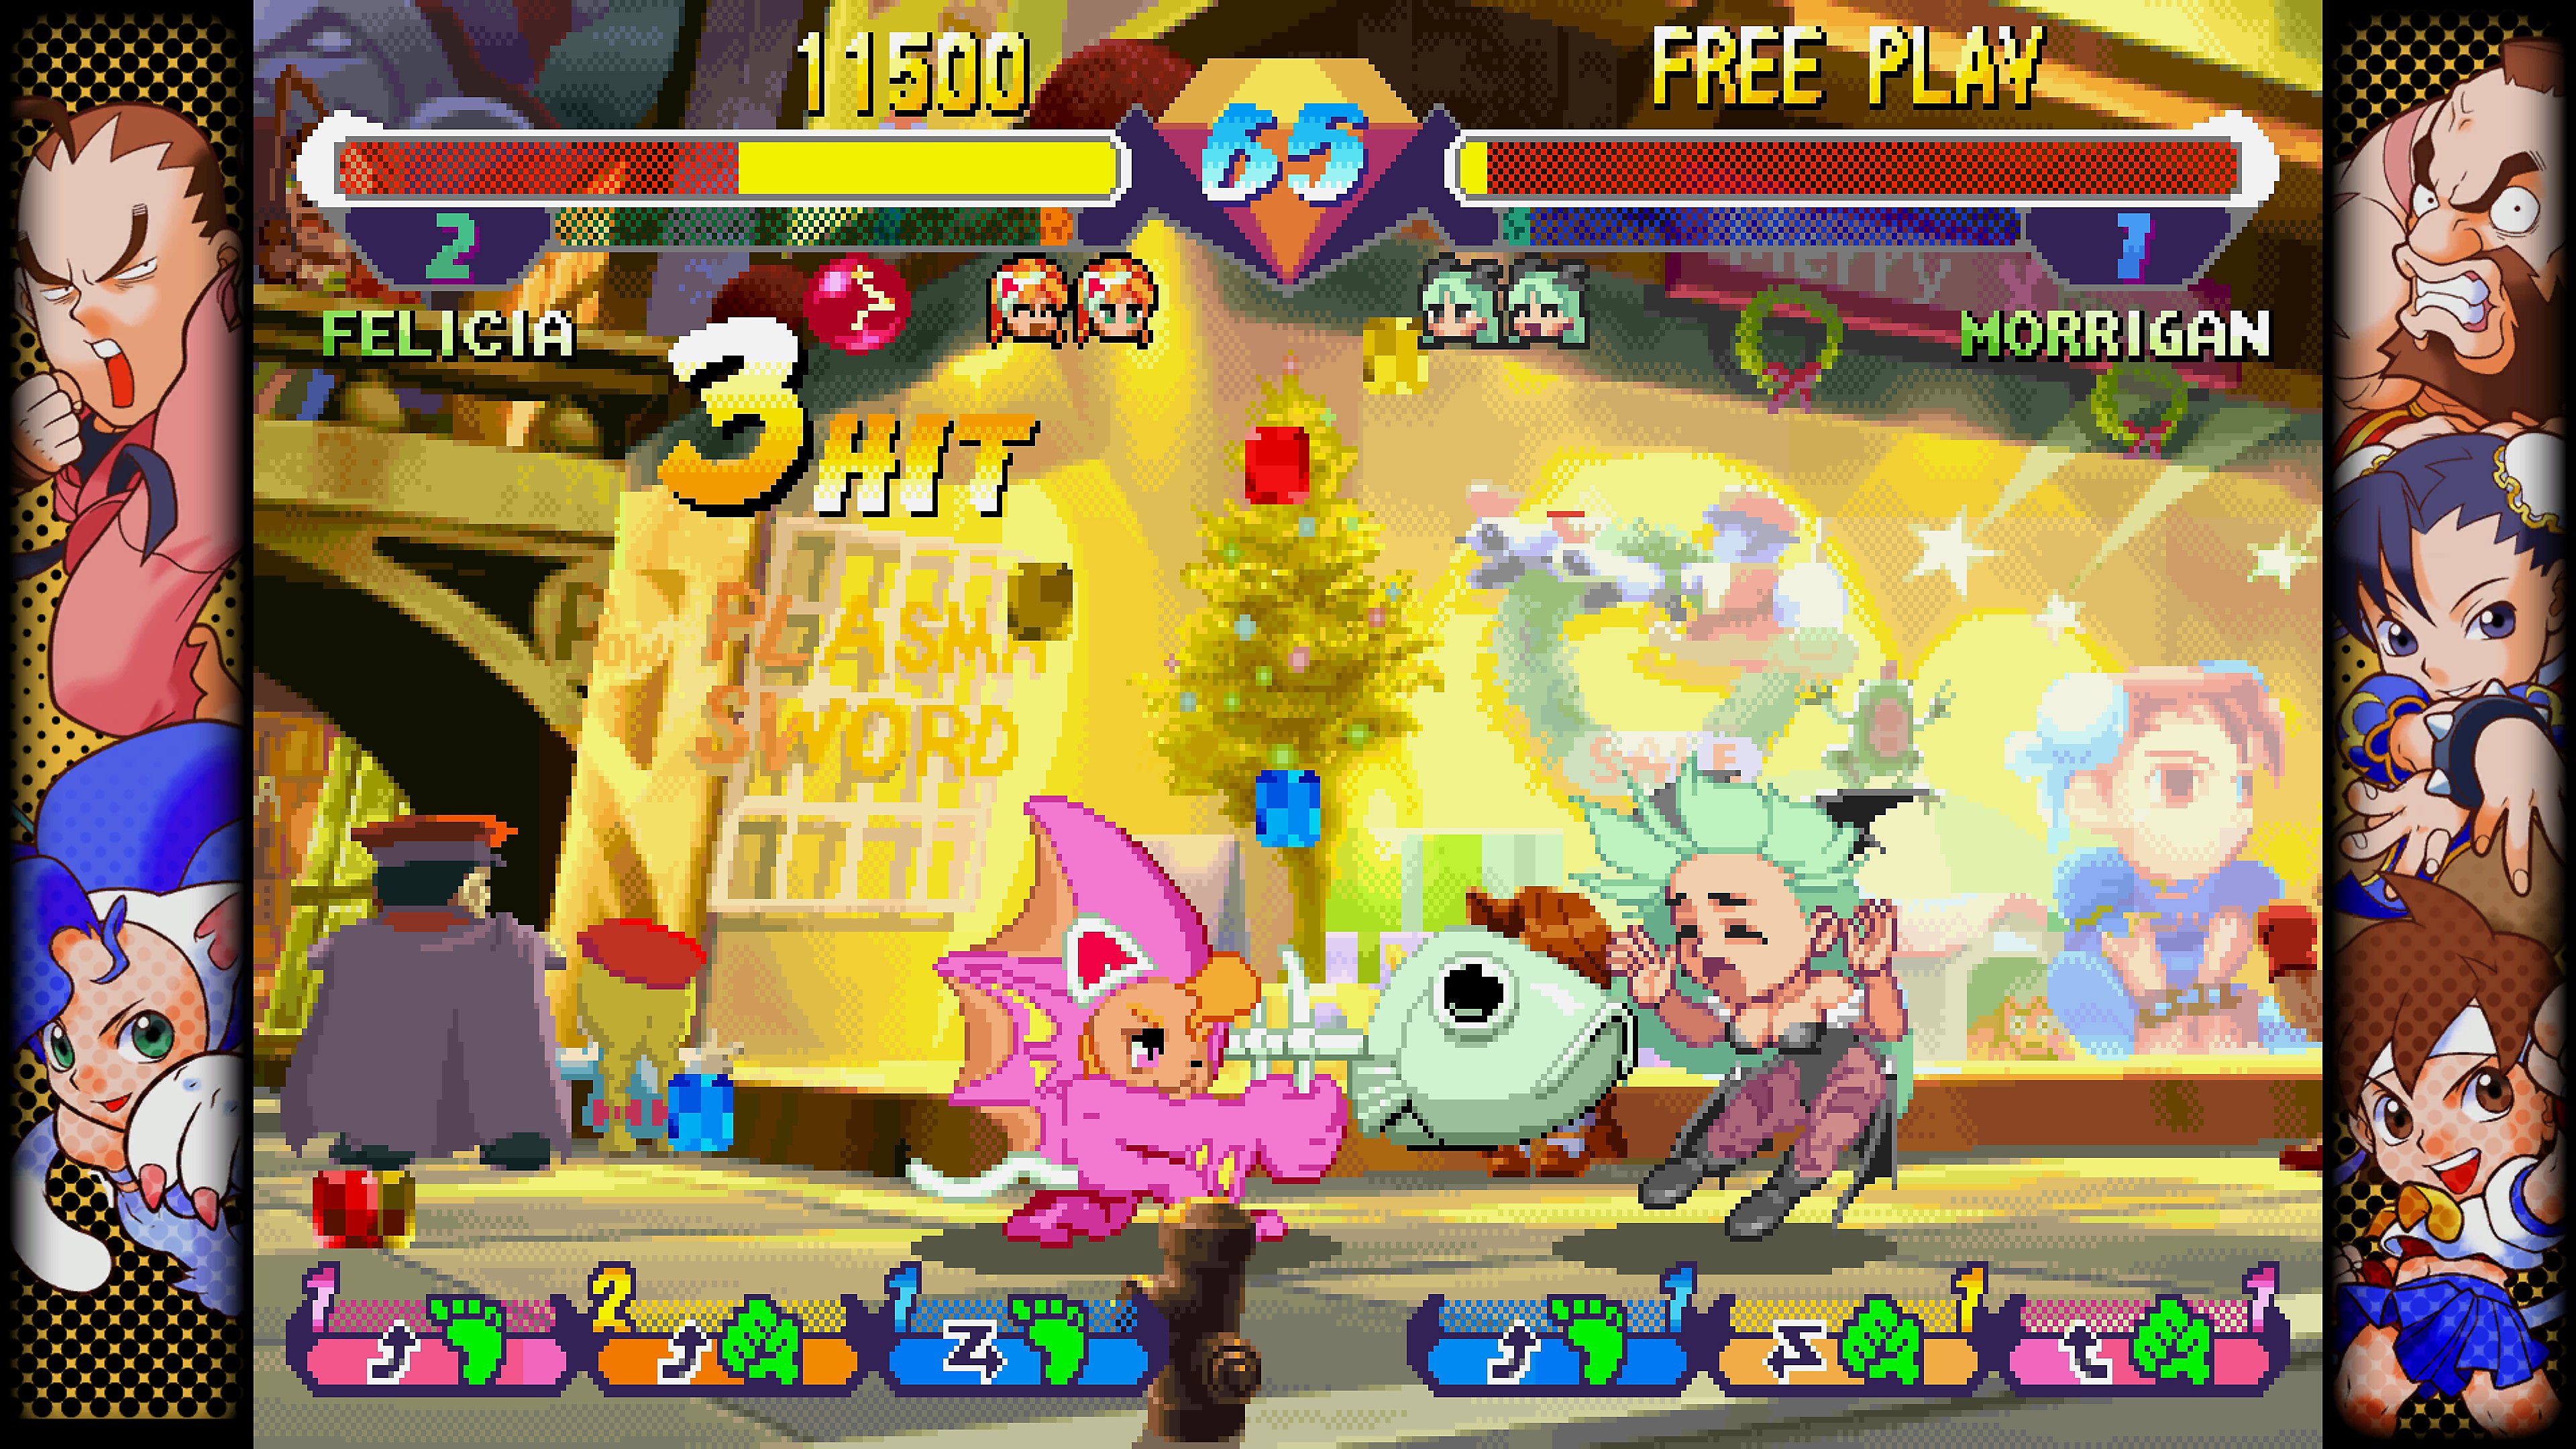 لقطة شاشة من Capcom Fighting Collection تعرض قتالاً بين شخصيتين